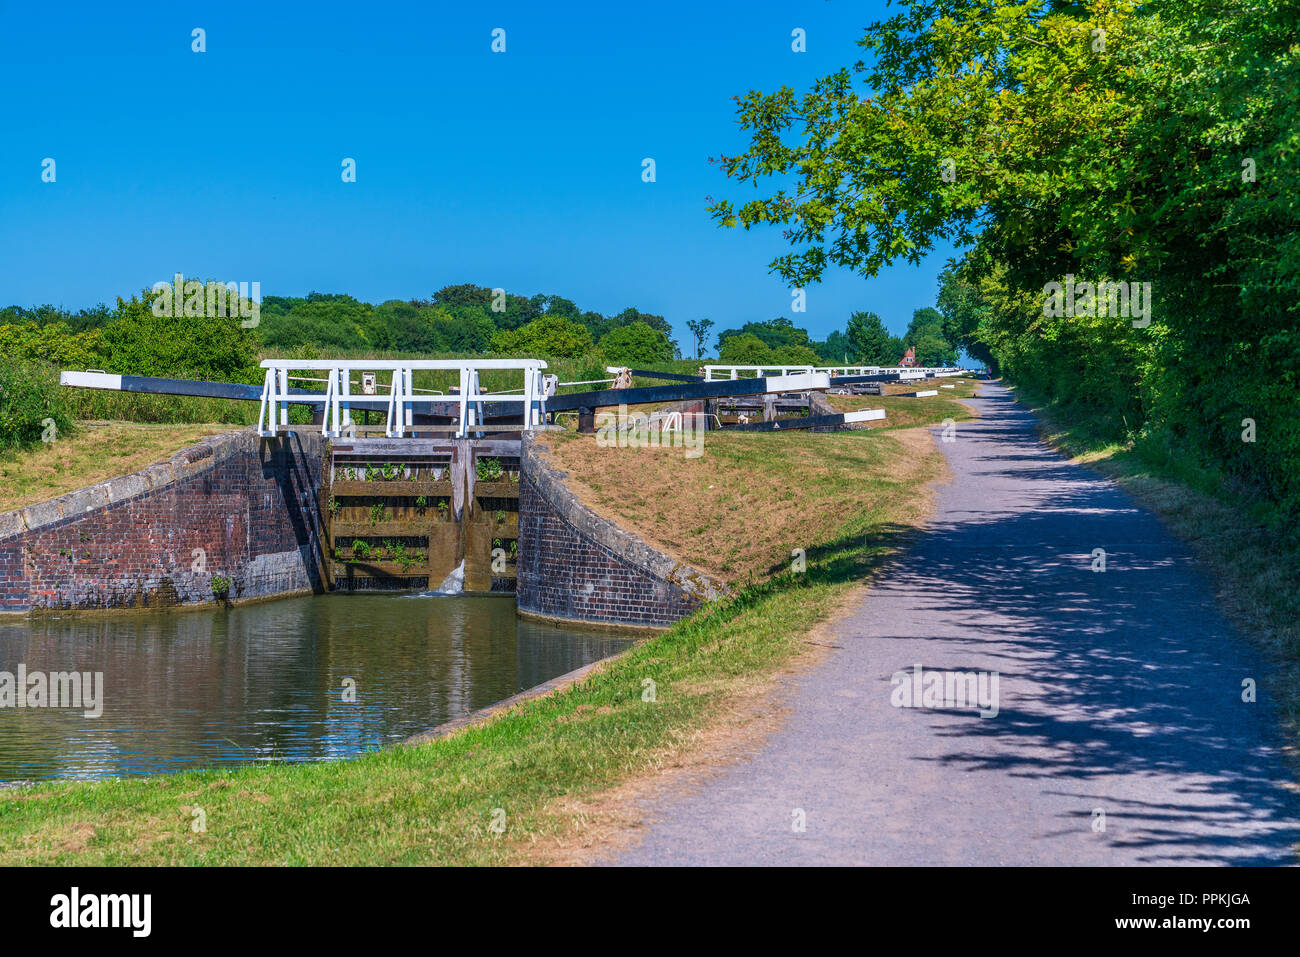 Caen Hill Locks un vol des écluses sur le canal Kennet et Avon, entre Rowde et Devizes, Wiltshire, Angleterre, Royaume-Uni, Europe Banque D'Images